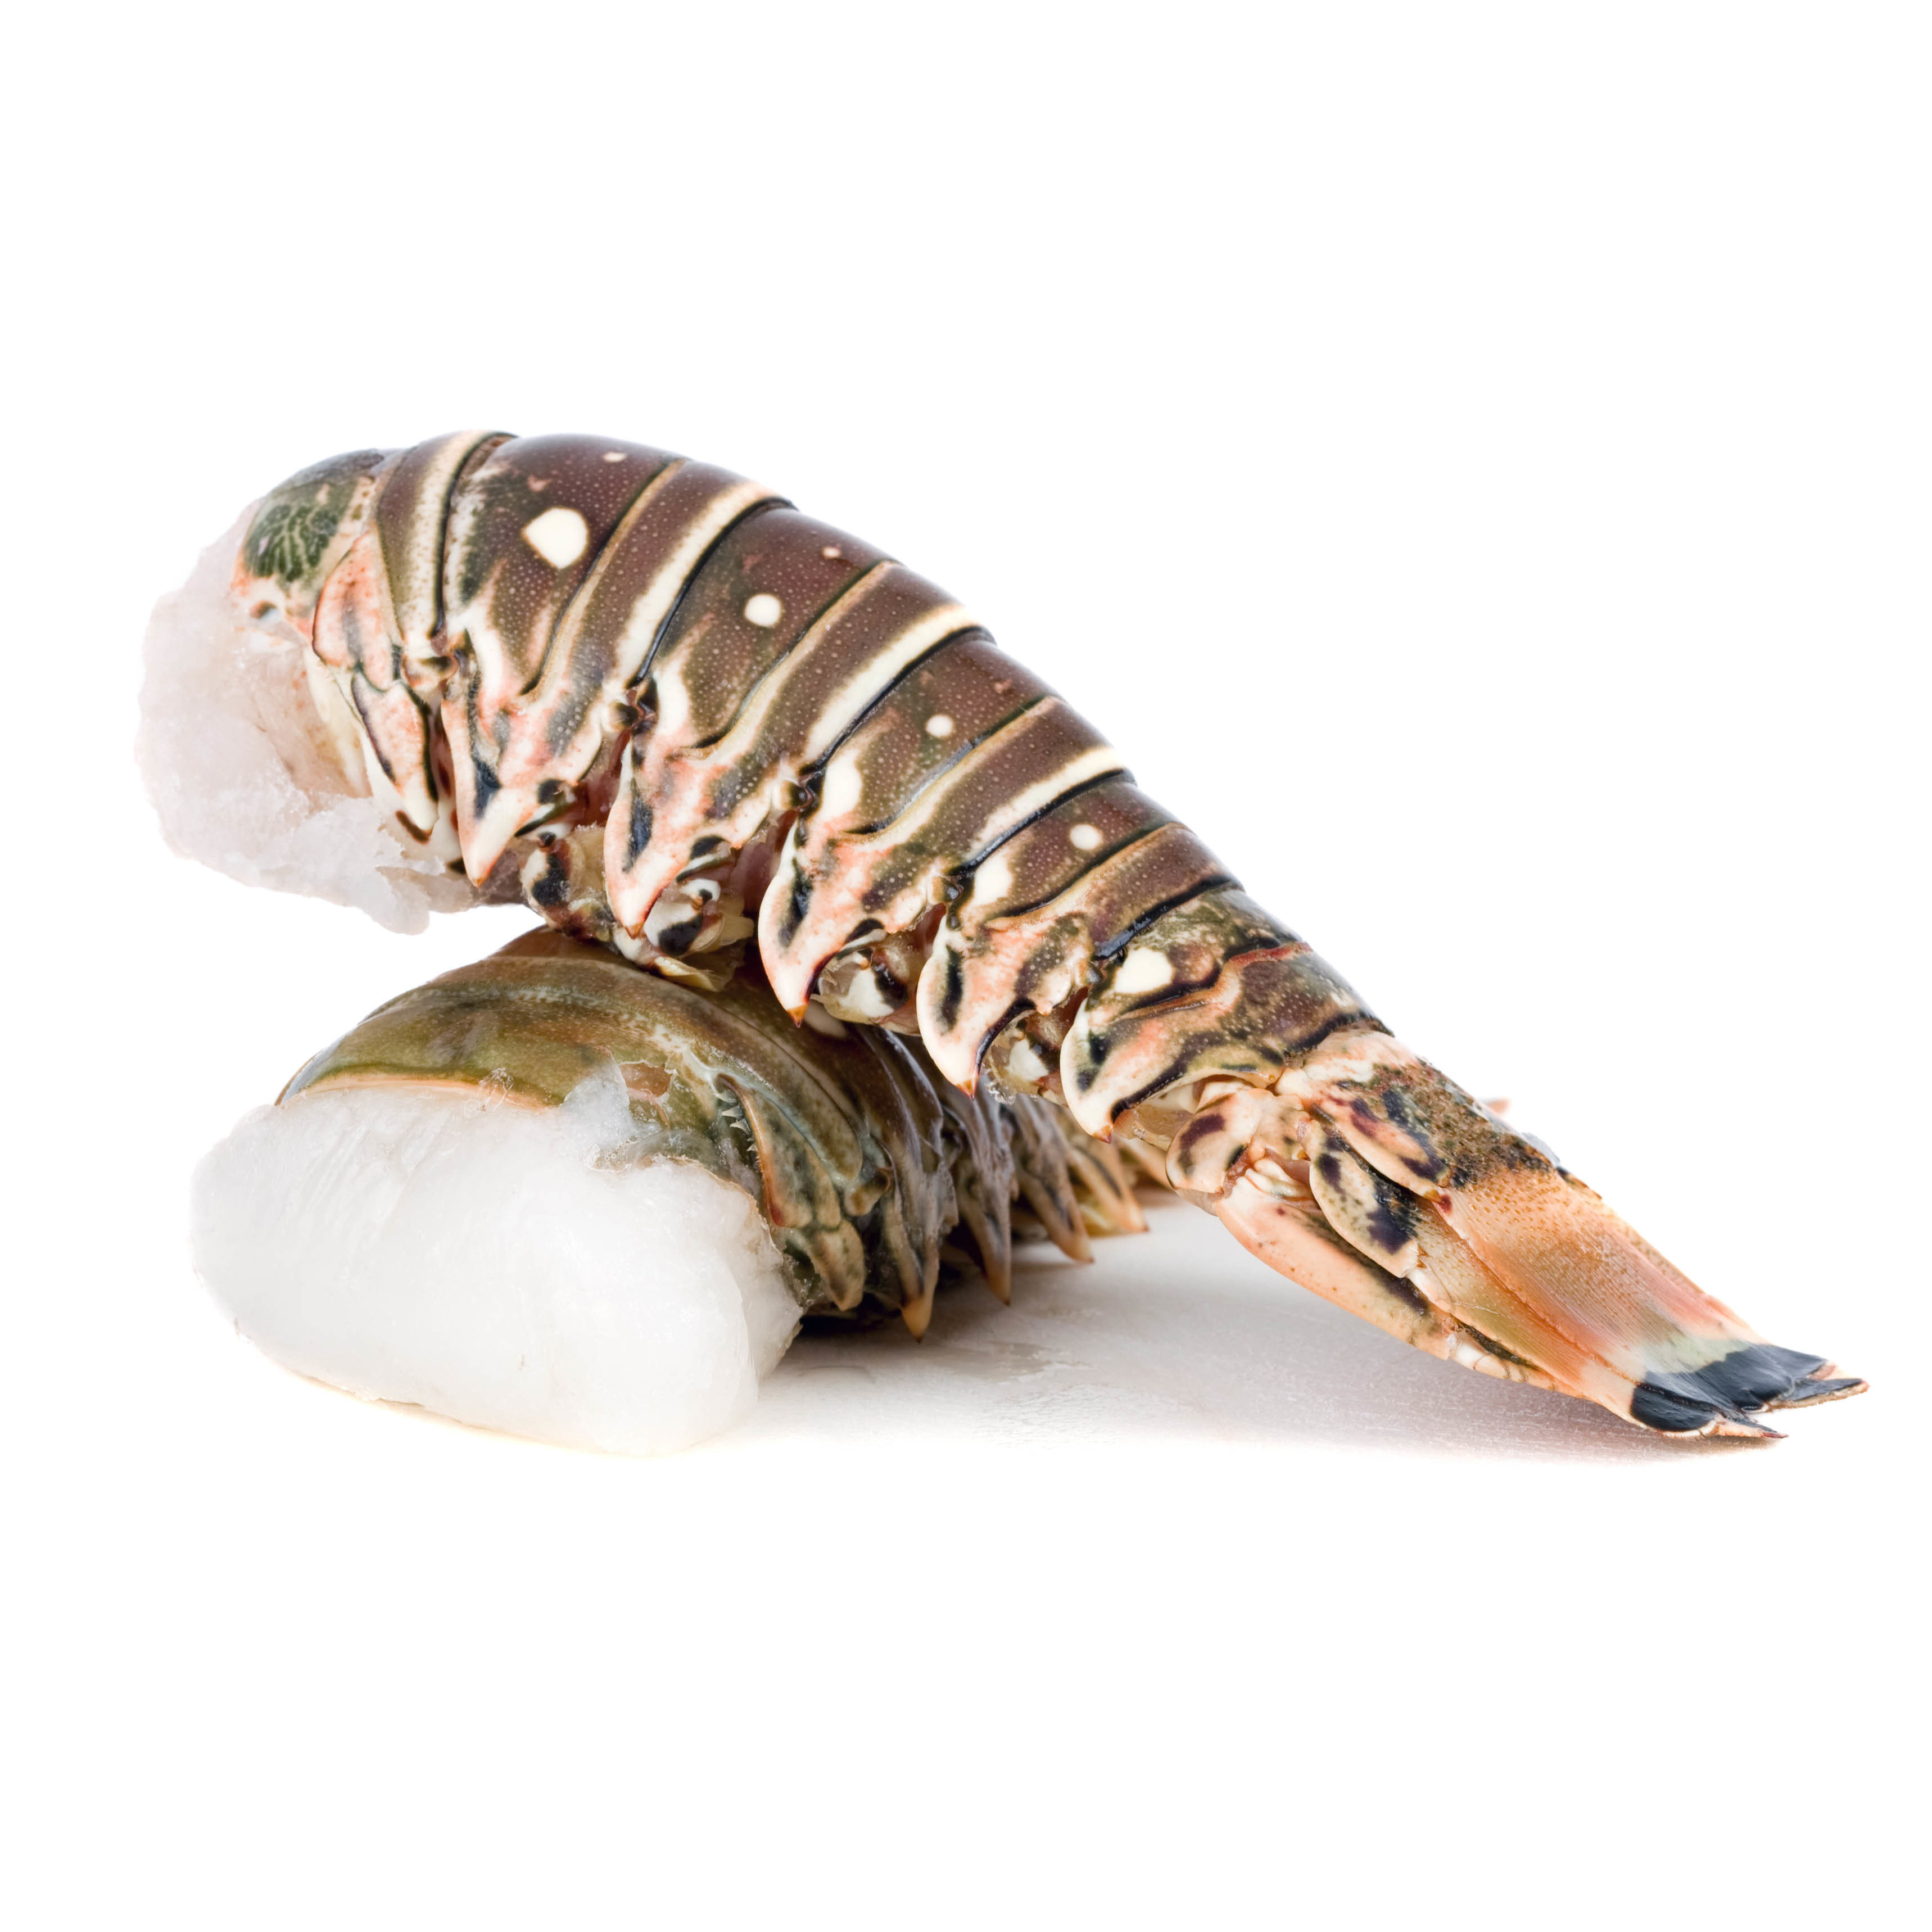 Frozen Australian Wild Green Lobster Tail 10/12oz (around 280g)*